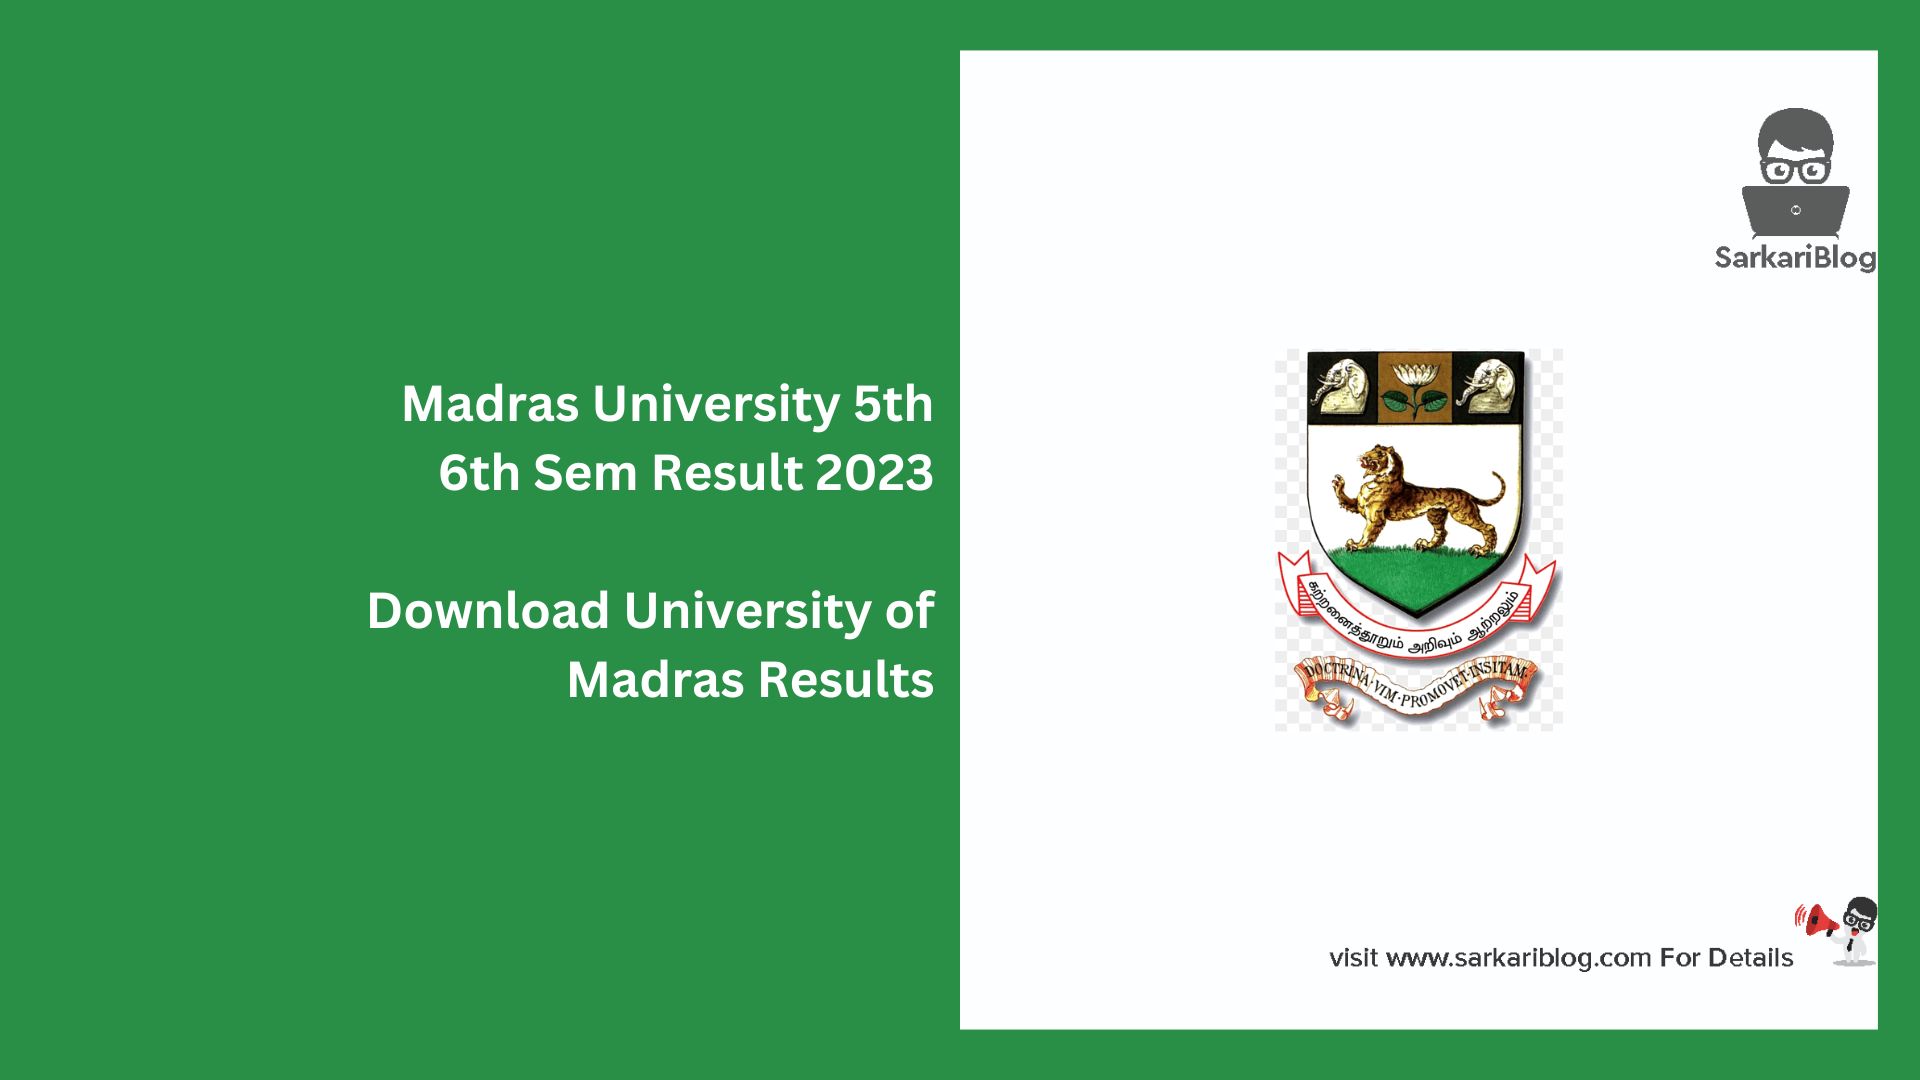 Madras University 5th 6th Sem Result 2023